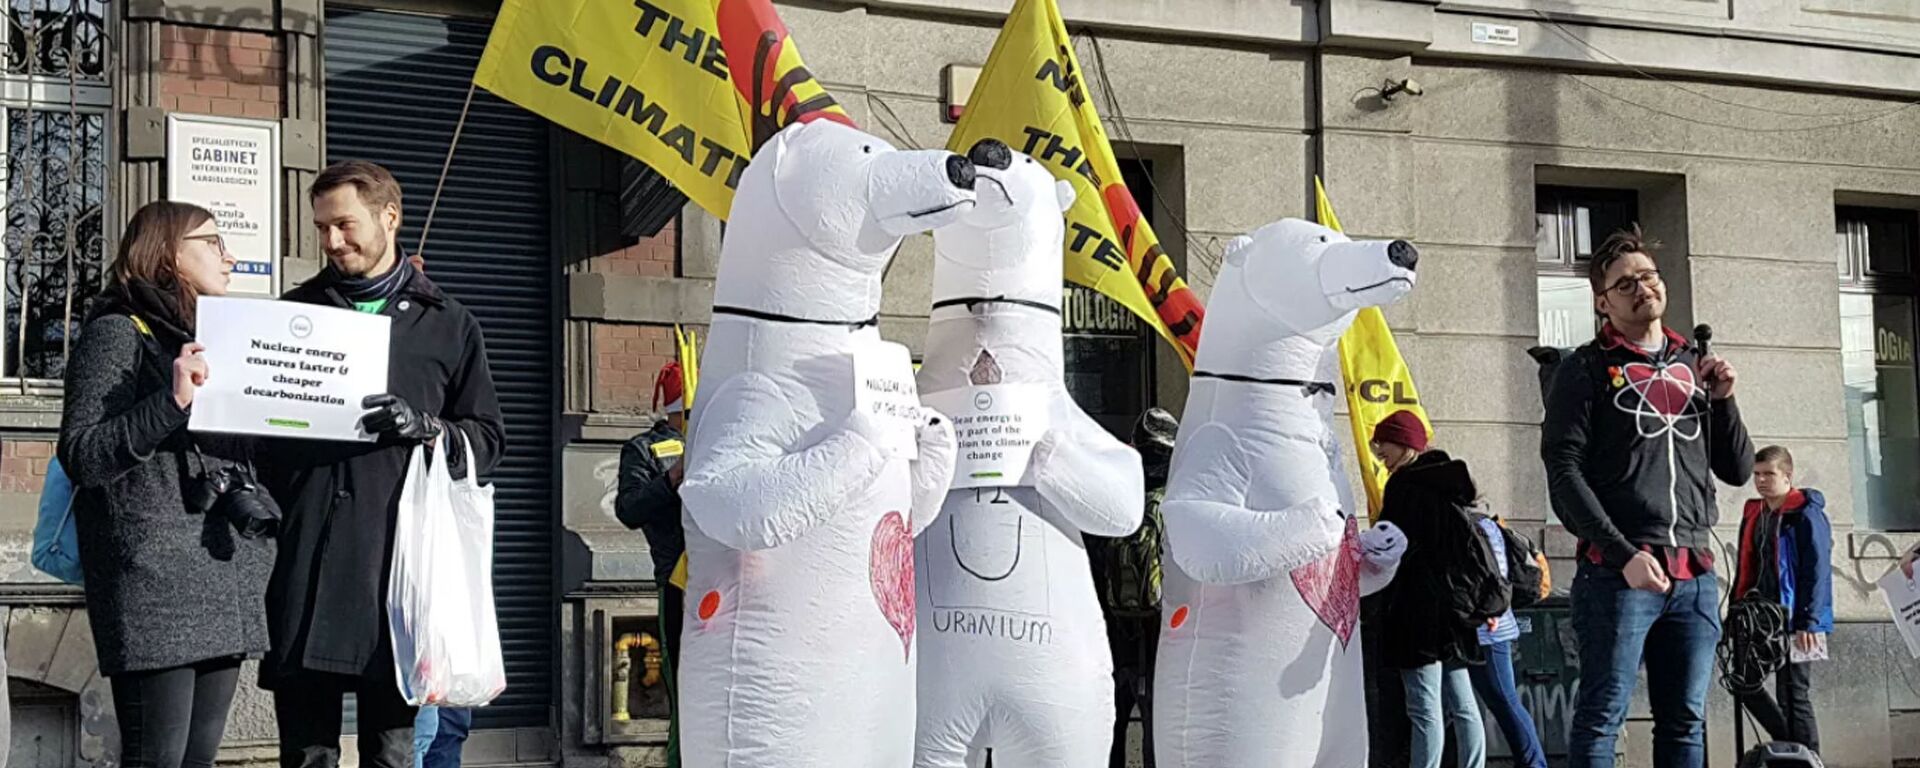 Активисты в костюмах белых медведей, выступающие за использование ядерной энергии взамен ископаемых видов топлива, во время климатического марша в Катовице, Польша - Sputnik Lietuva, 1920, 27.10.2020